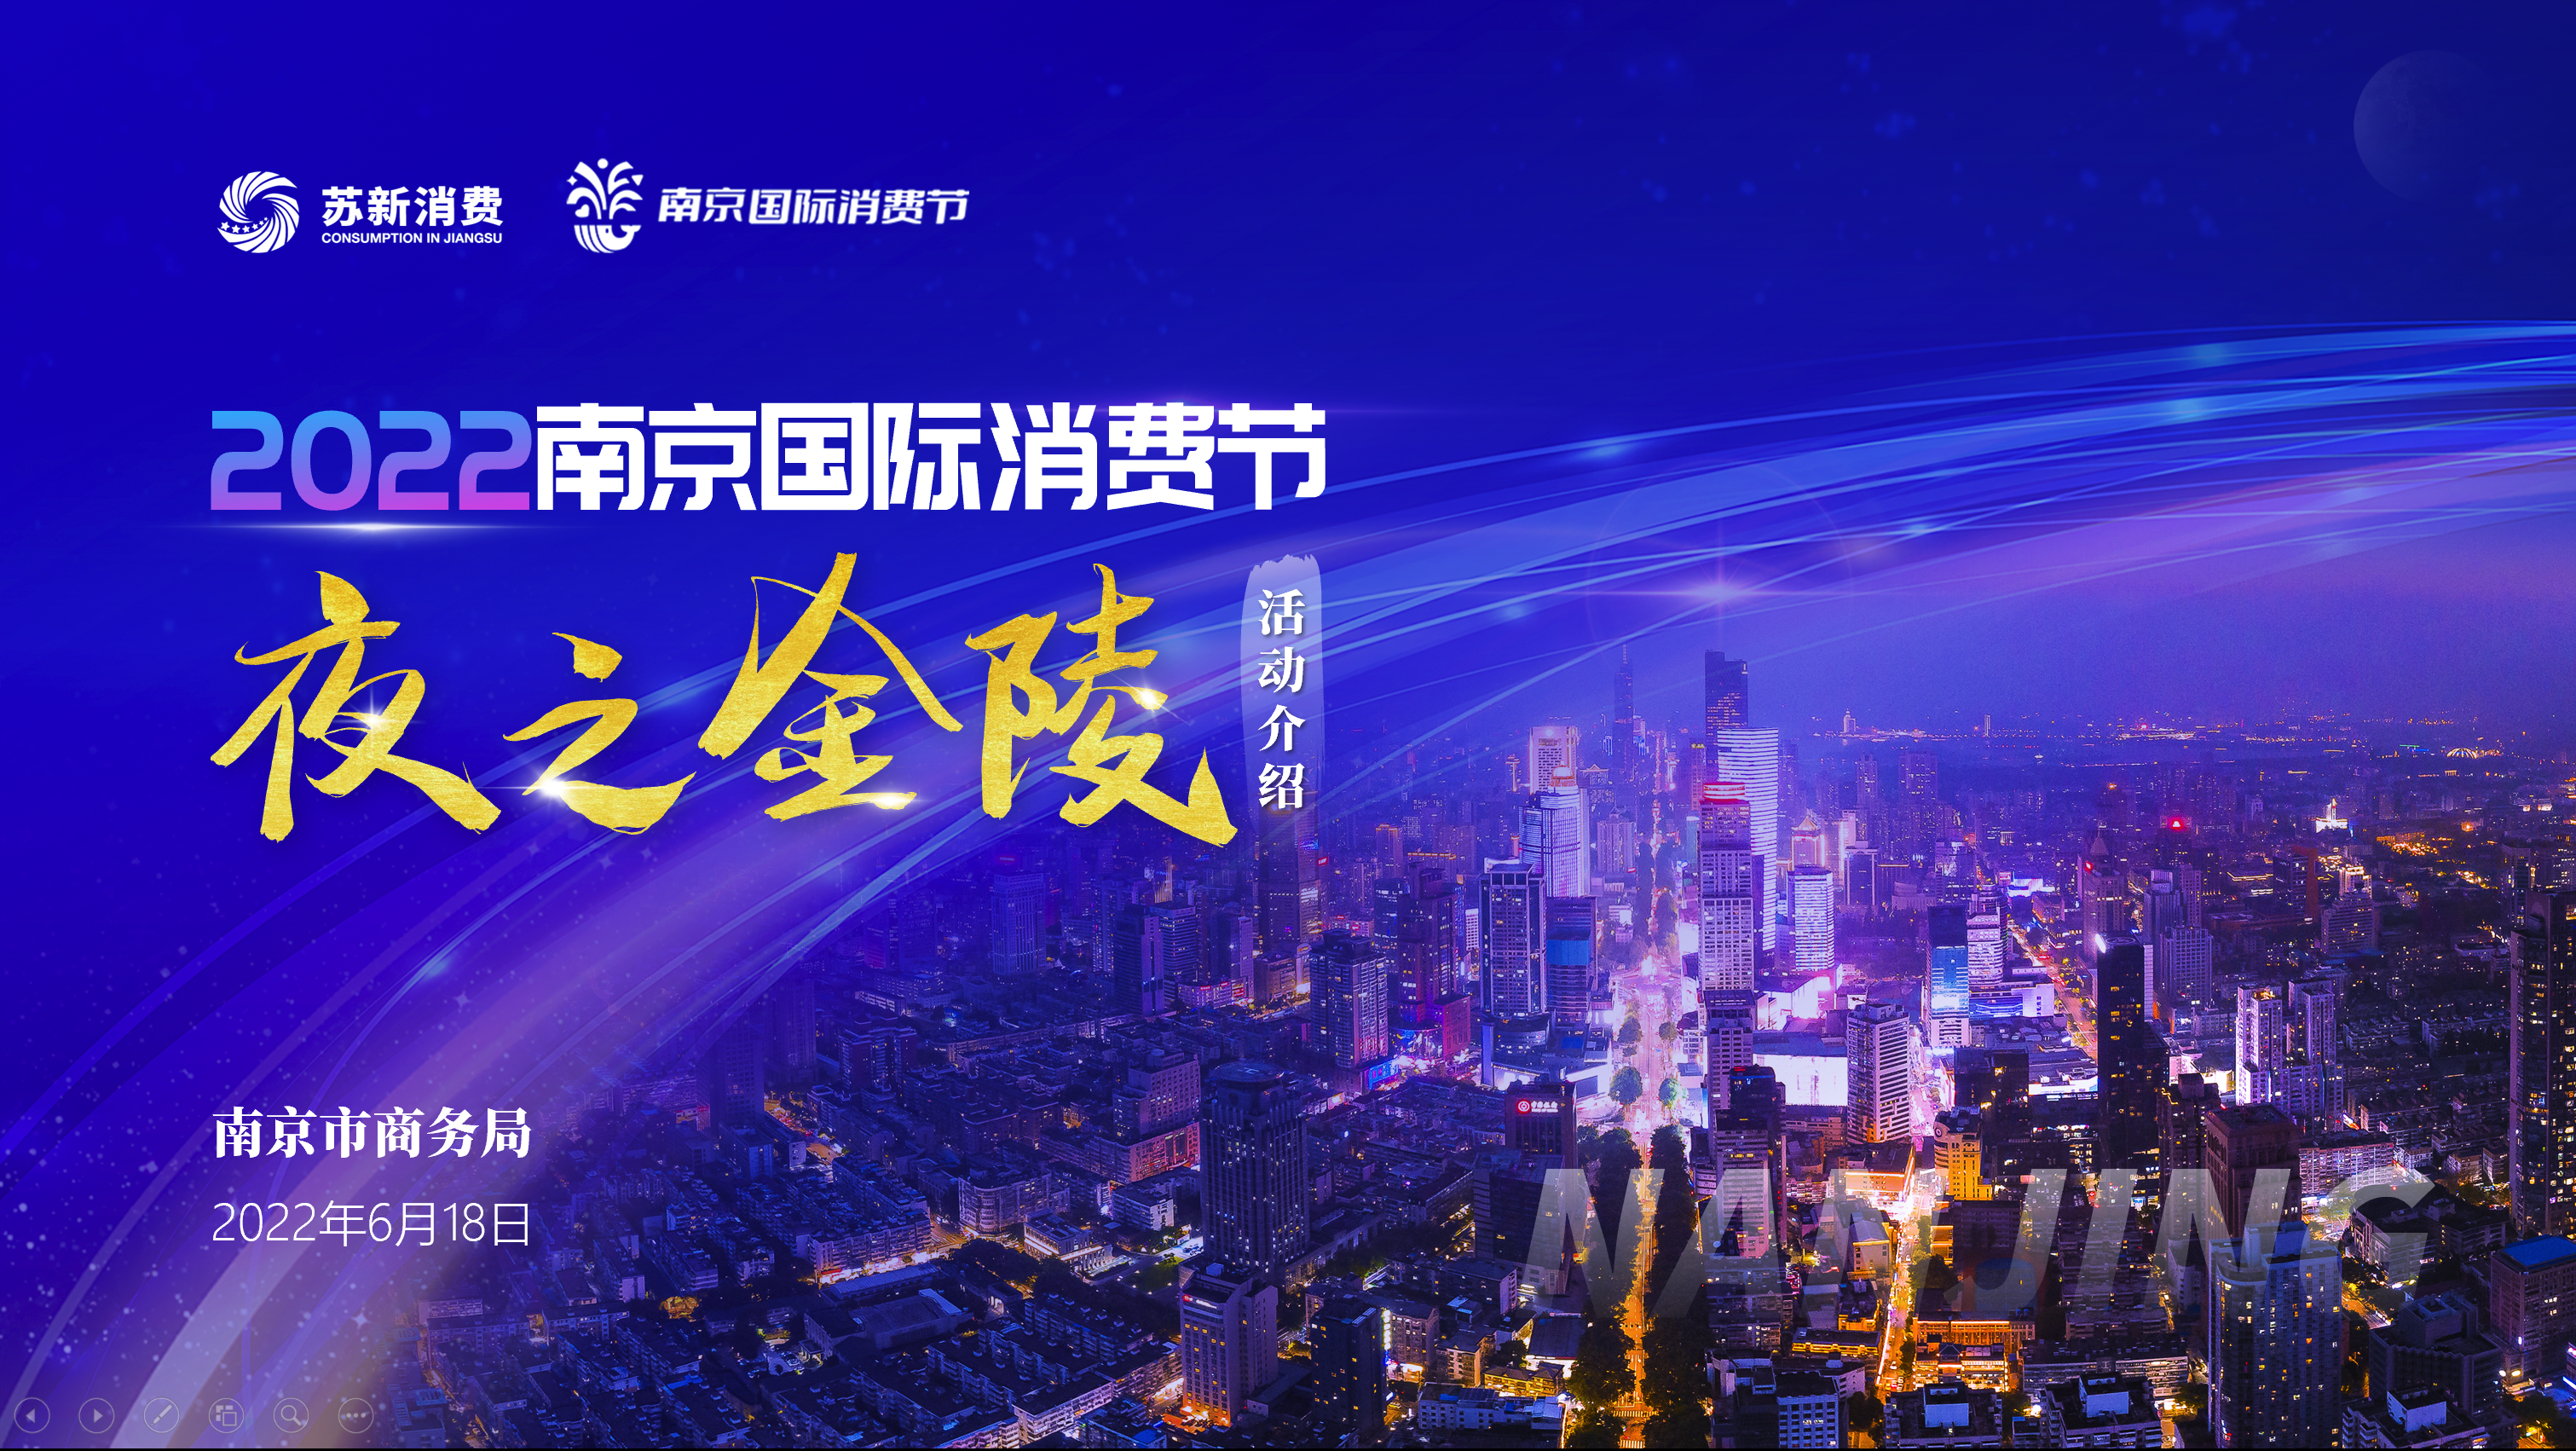 2022南京国际消费节·夜之金陵